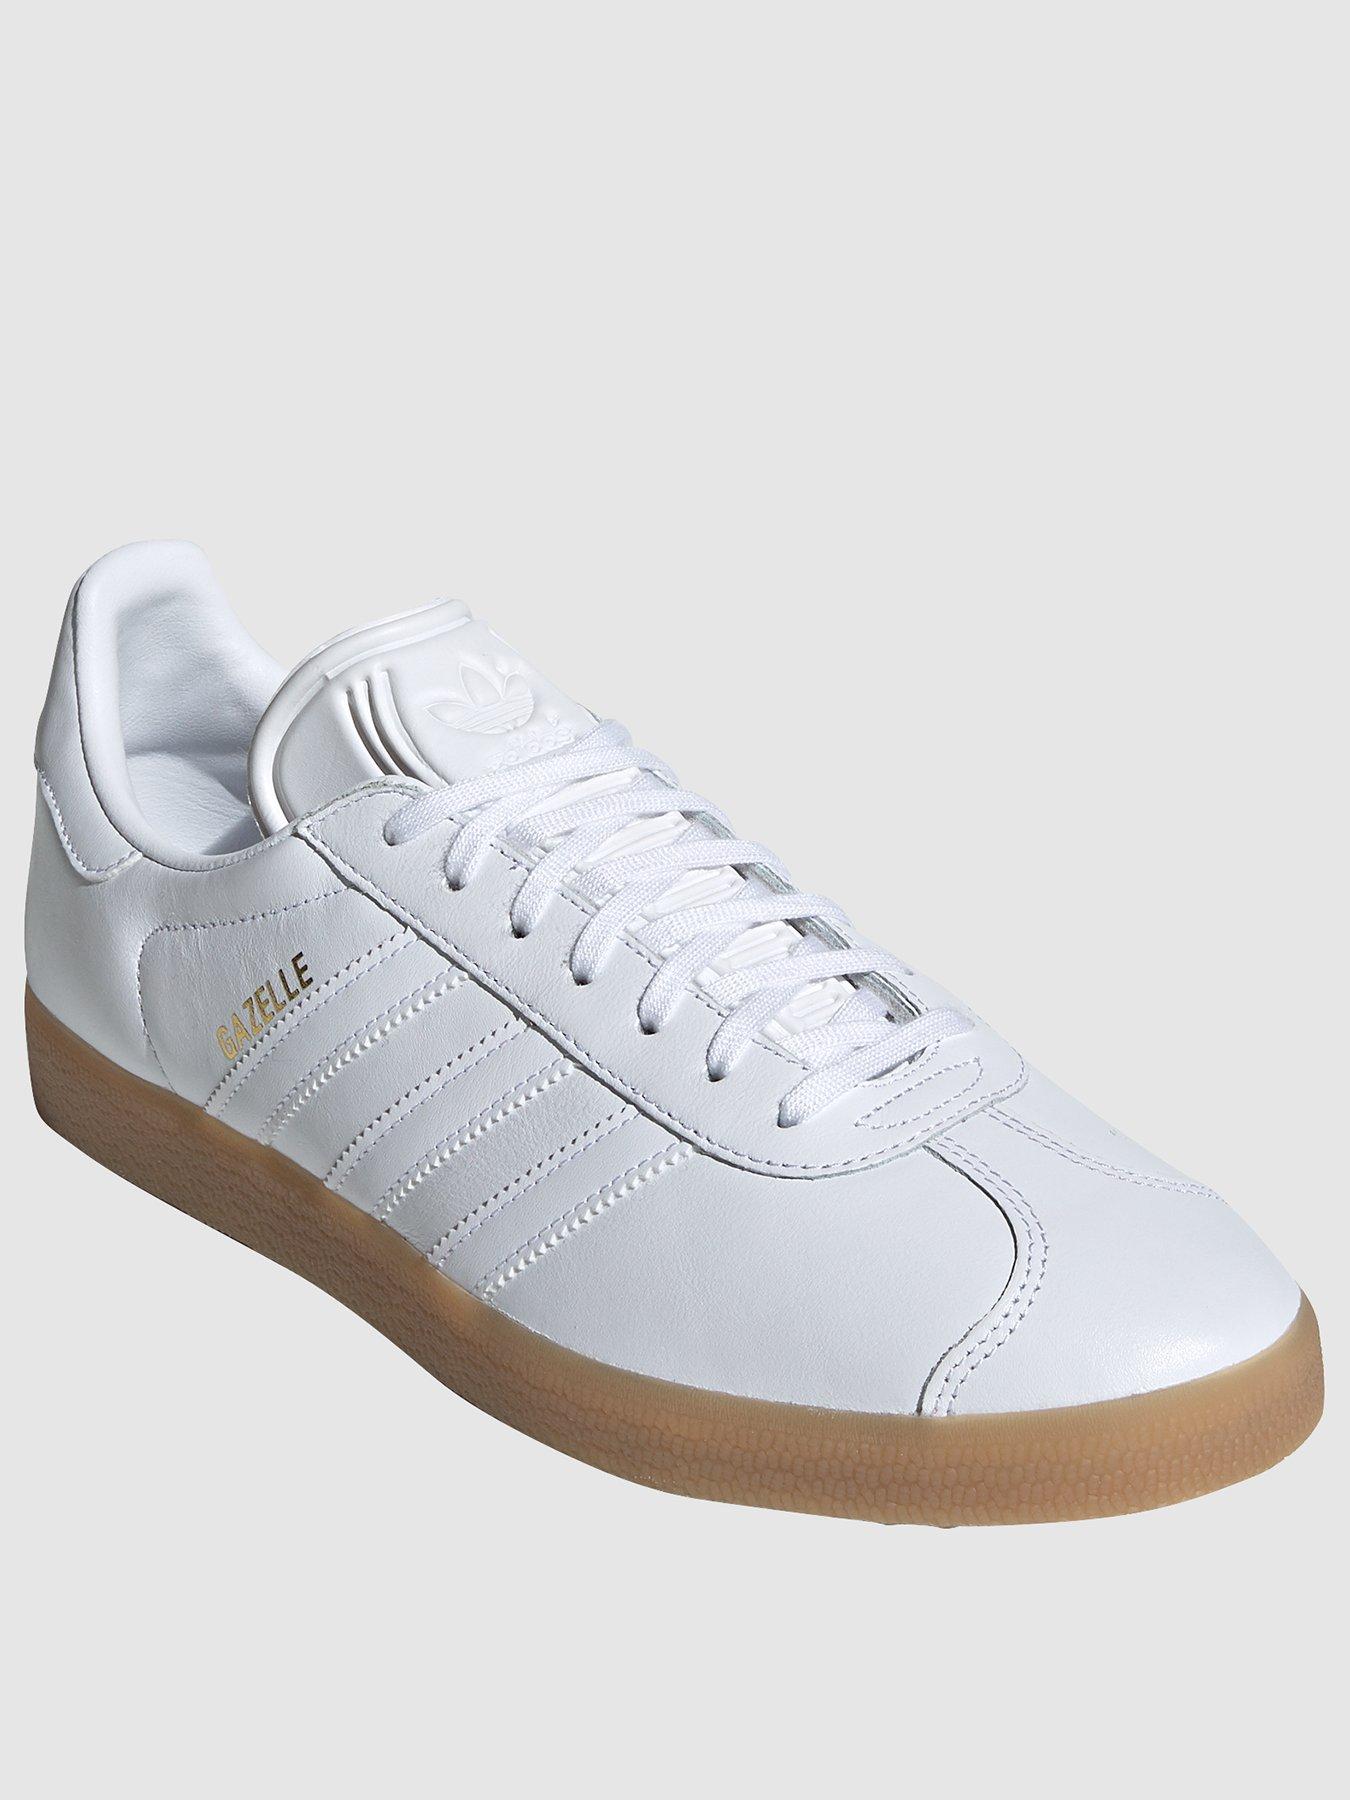 adidas gazelle white gum